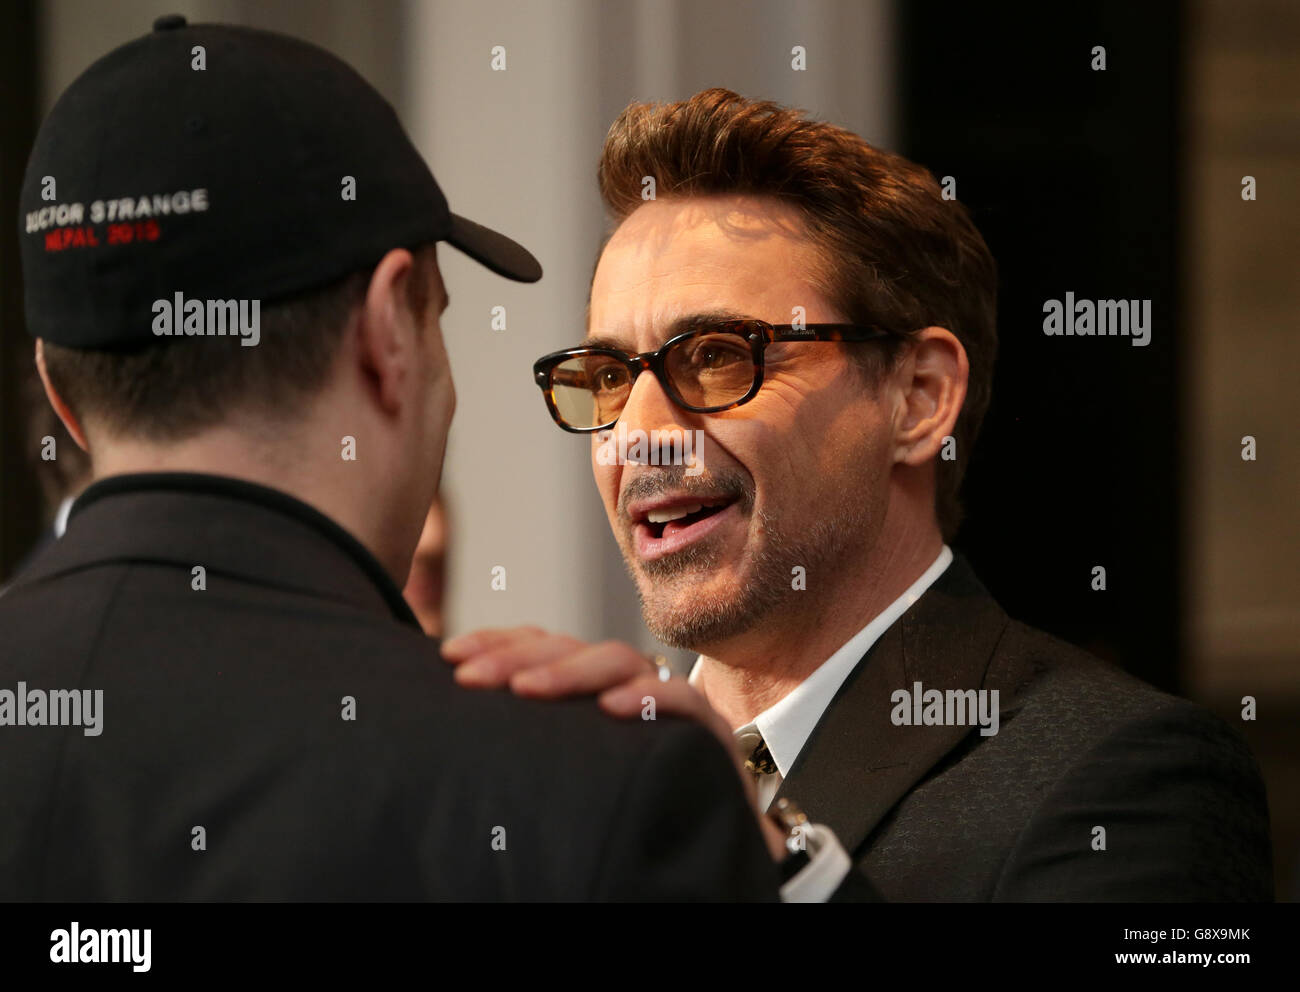 Robert Downey Jr. (rechts) beim Captain America Civil war Photocall im Corinthia Hotel, London. DRÜCKEN Sie VERBANDSFOTO. Bilddatum: Montag, 25. April 2016. Bildnachweis sollte lauten: Daniel Leal-Olivas/PA Wire Stockfoto